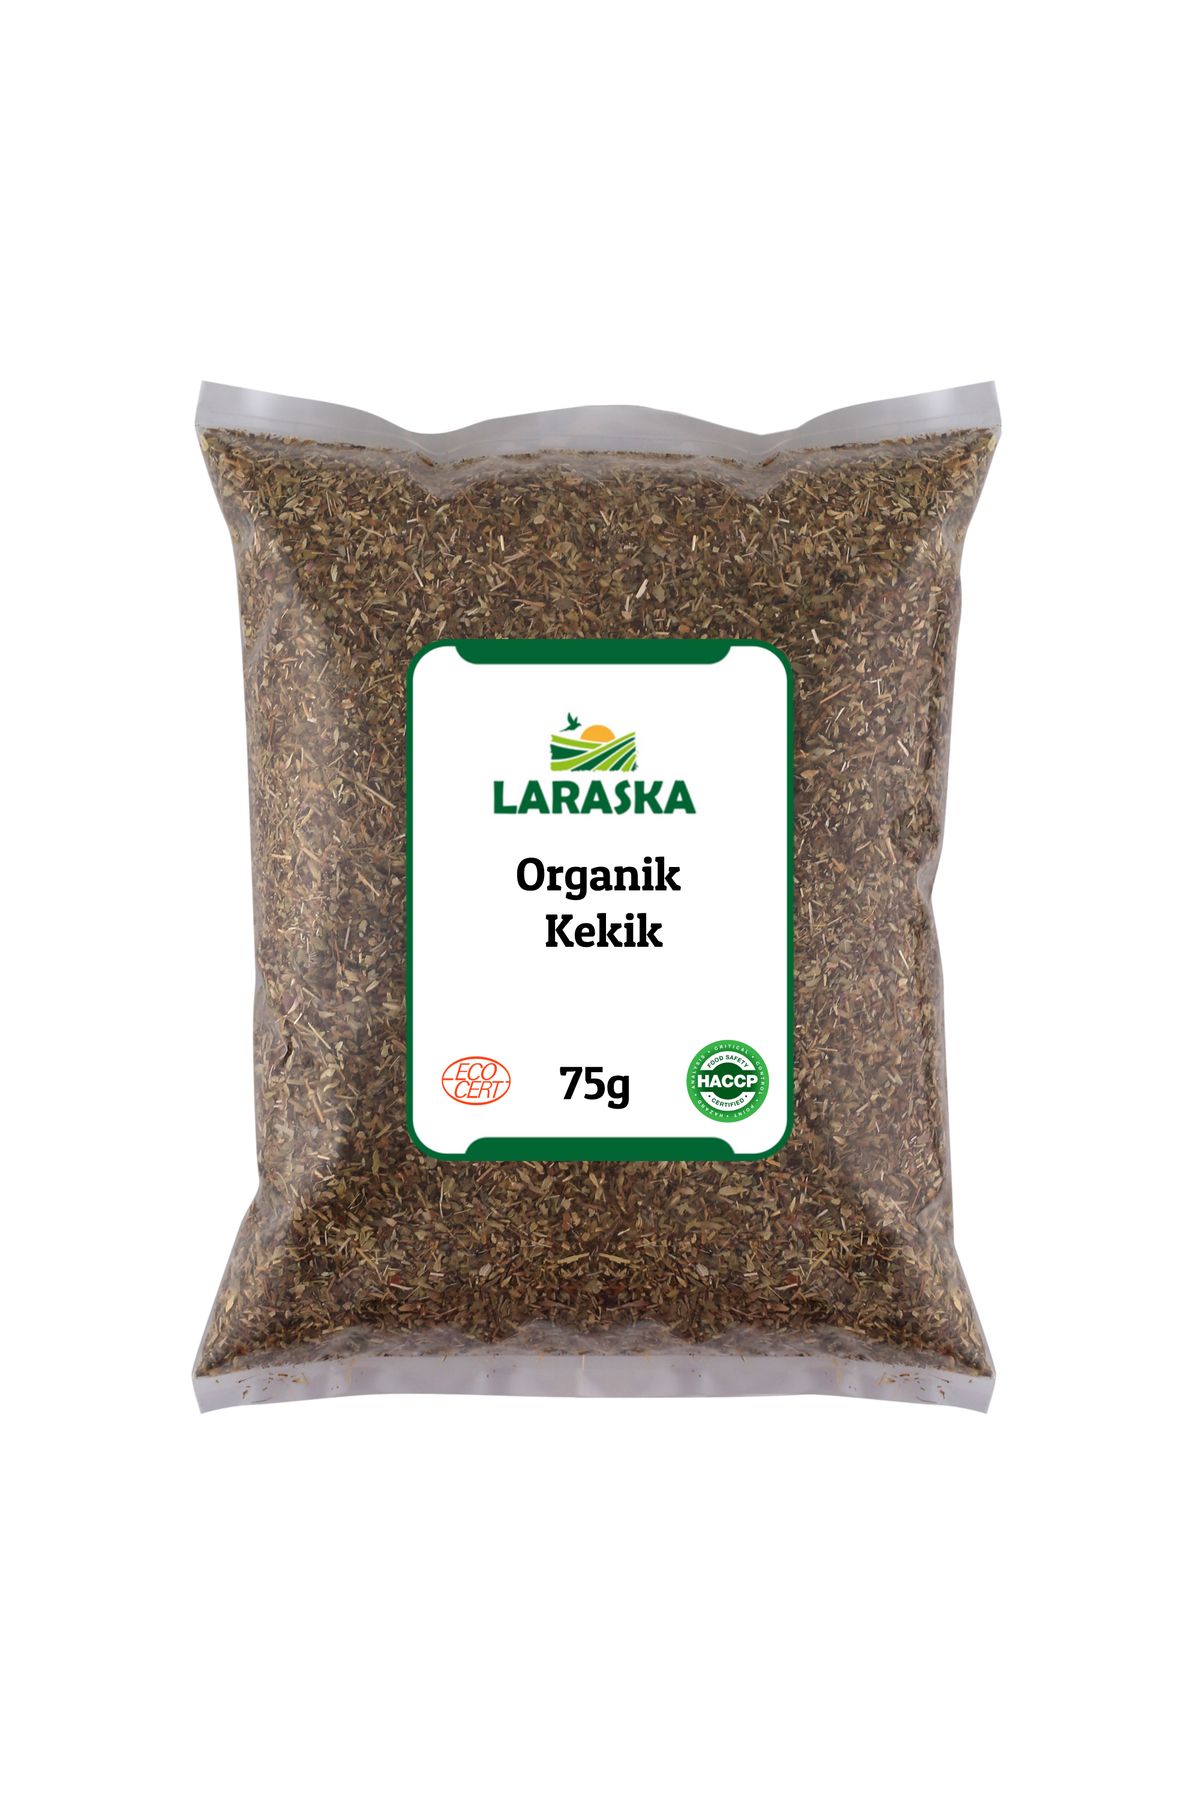 Laraska Organik Kekik 75g - Organic Oregano 75g